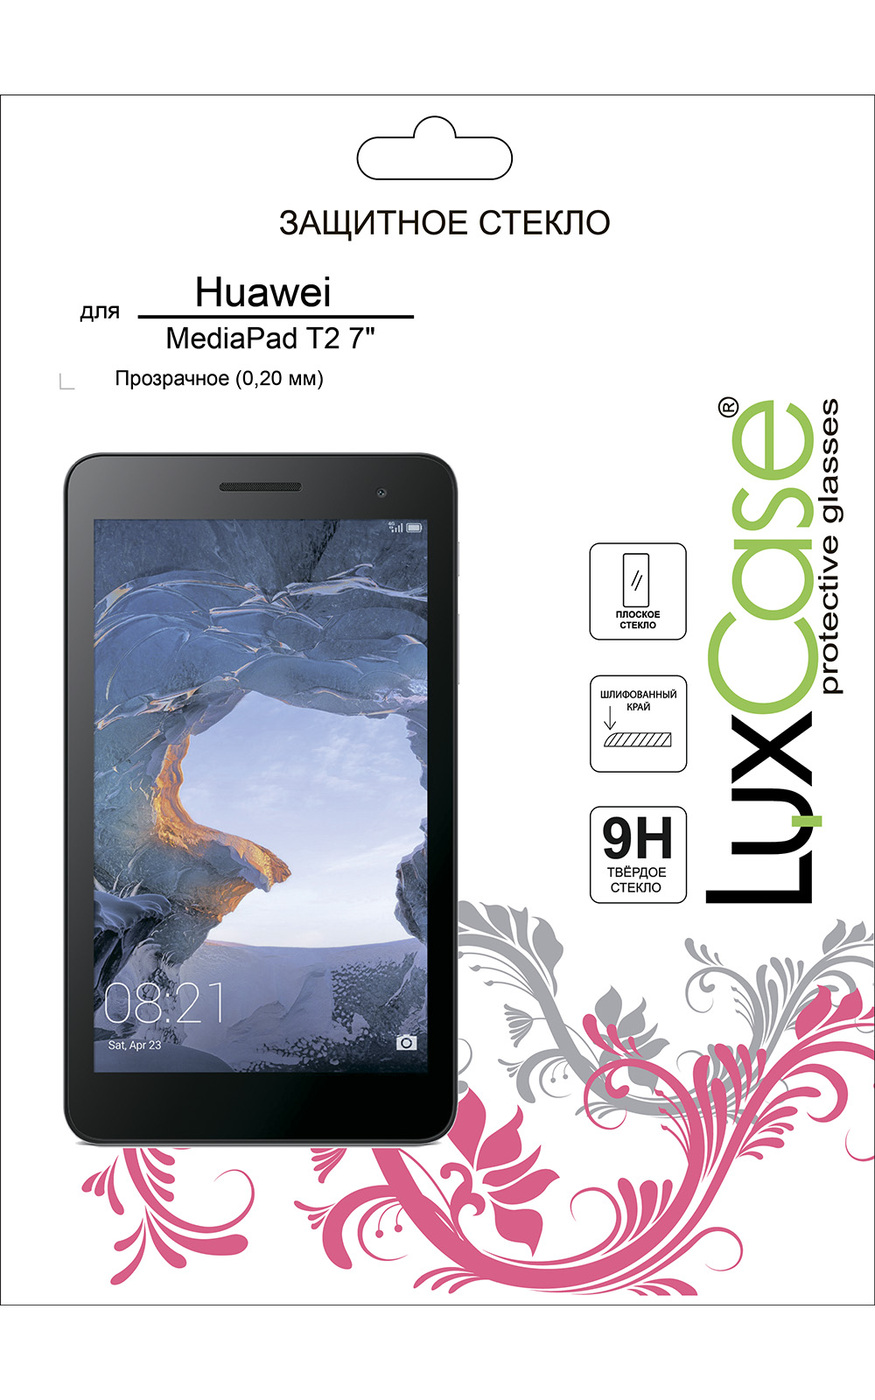 Стекло защитное плоское LuxCase для Huawei MediaPad T2 7, Прозрачное, 0,2 мм закаленное защитное стекло для планшета prestigio grace 3318 3g 8 9h взрывозащищенная высококачественная пленка для экрана